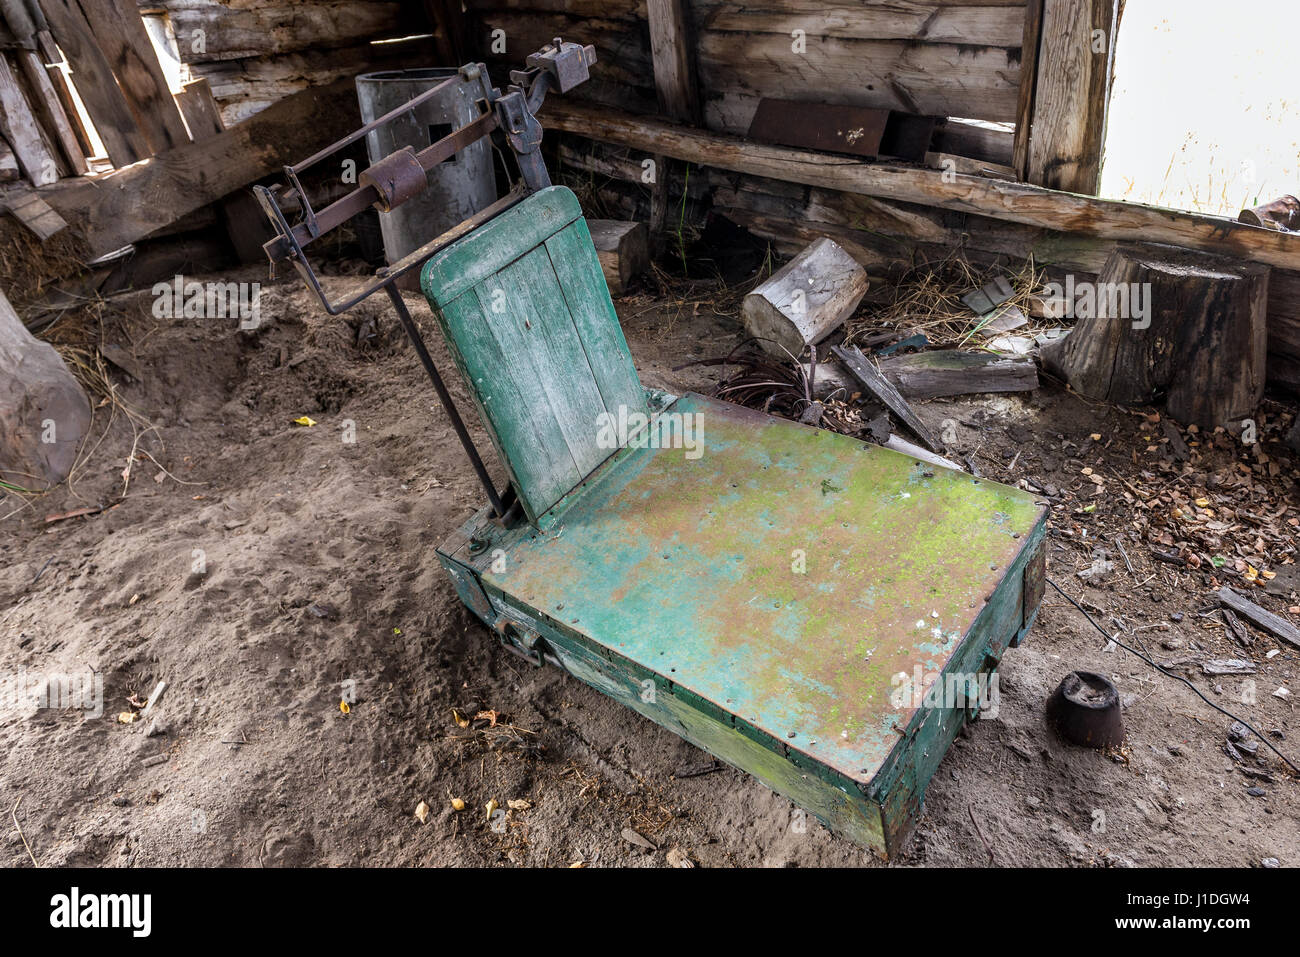 Ancienne balance en Mashevo village abandonné de la centrale nucléaire de Tchernobyl d'aliénation de la zone la zone autour de la catastrophe du réacteur nucléaire en Ukraine Banque D'Images